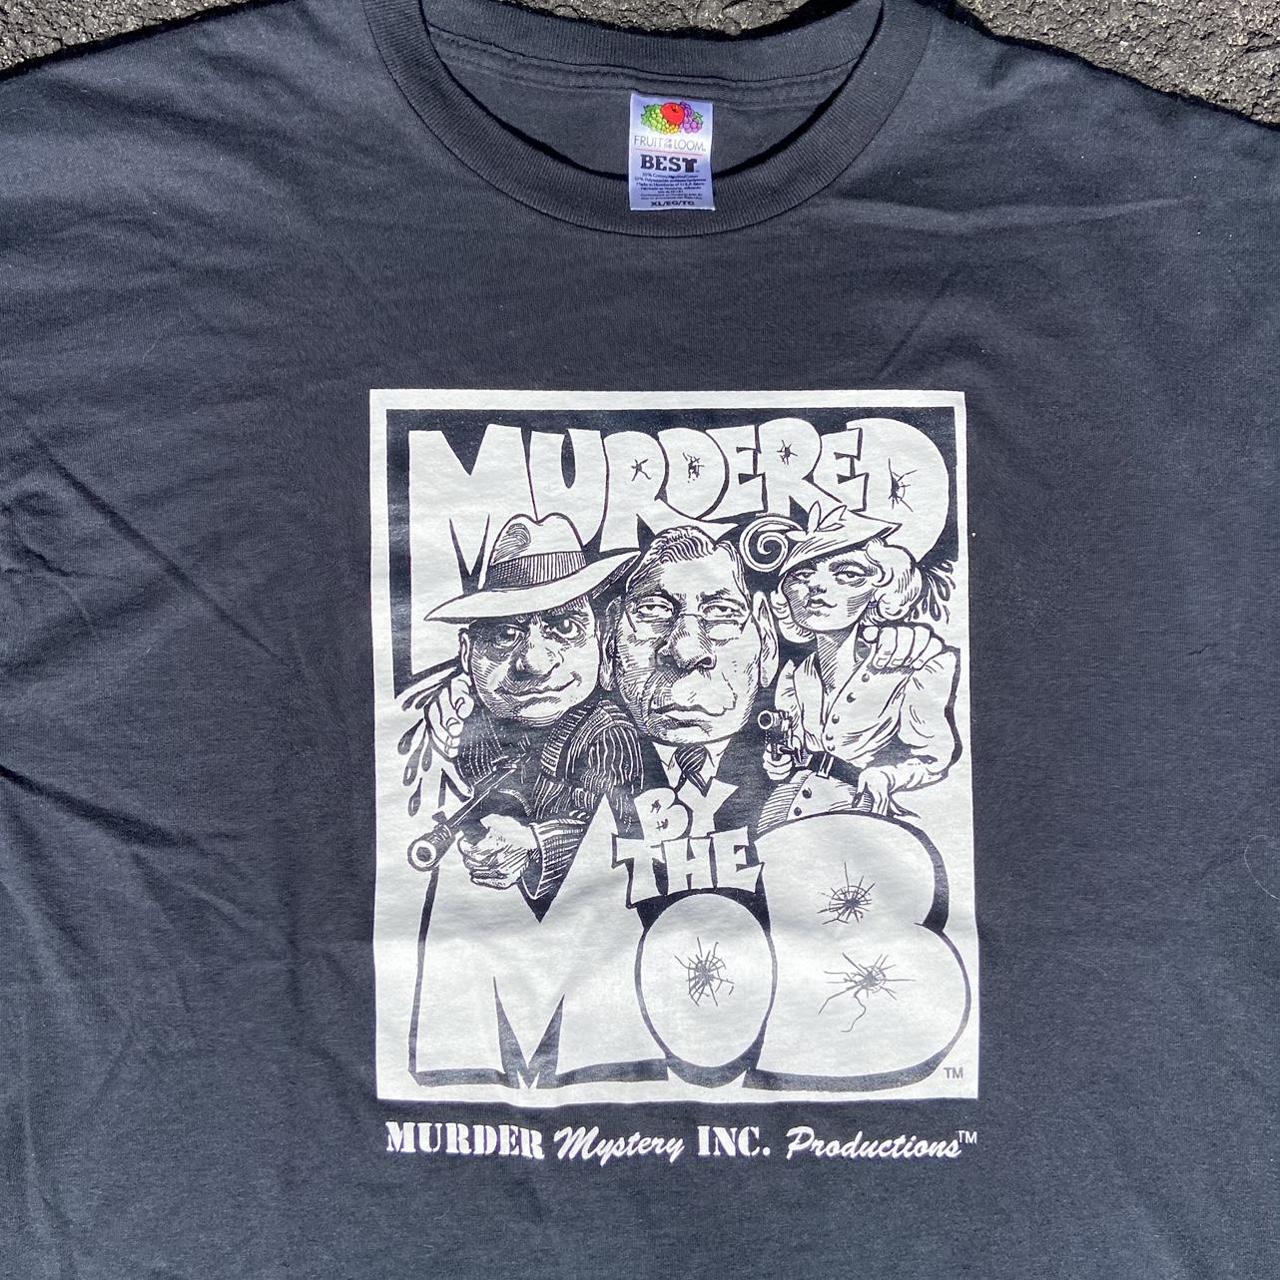 Murder Mystery 2' Men's T-Shirt